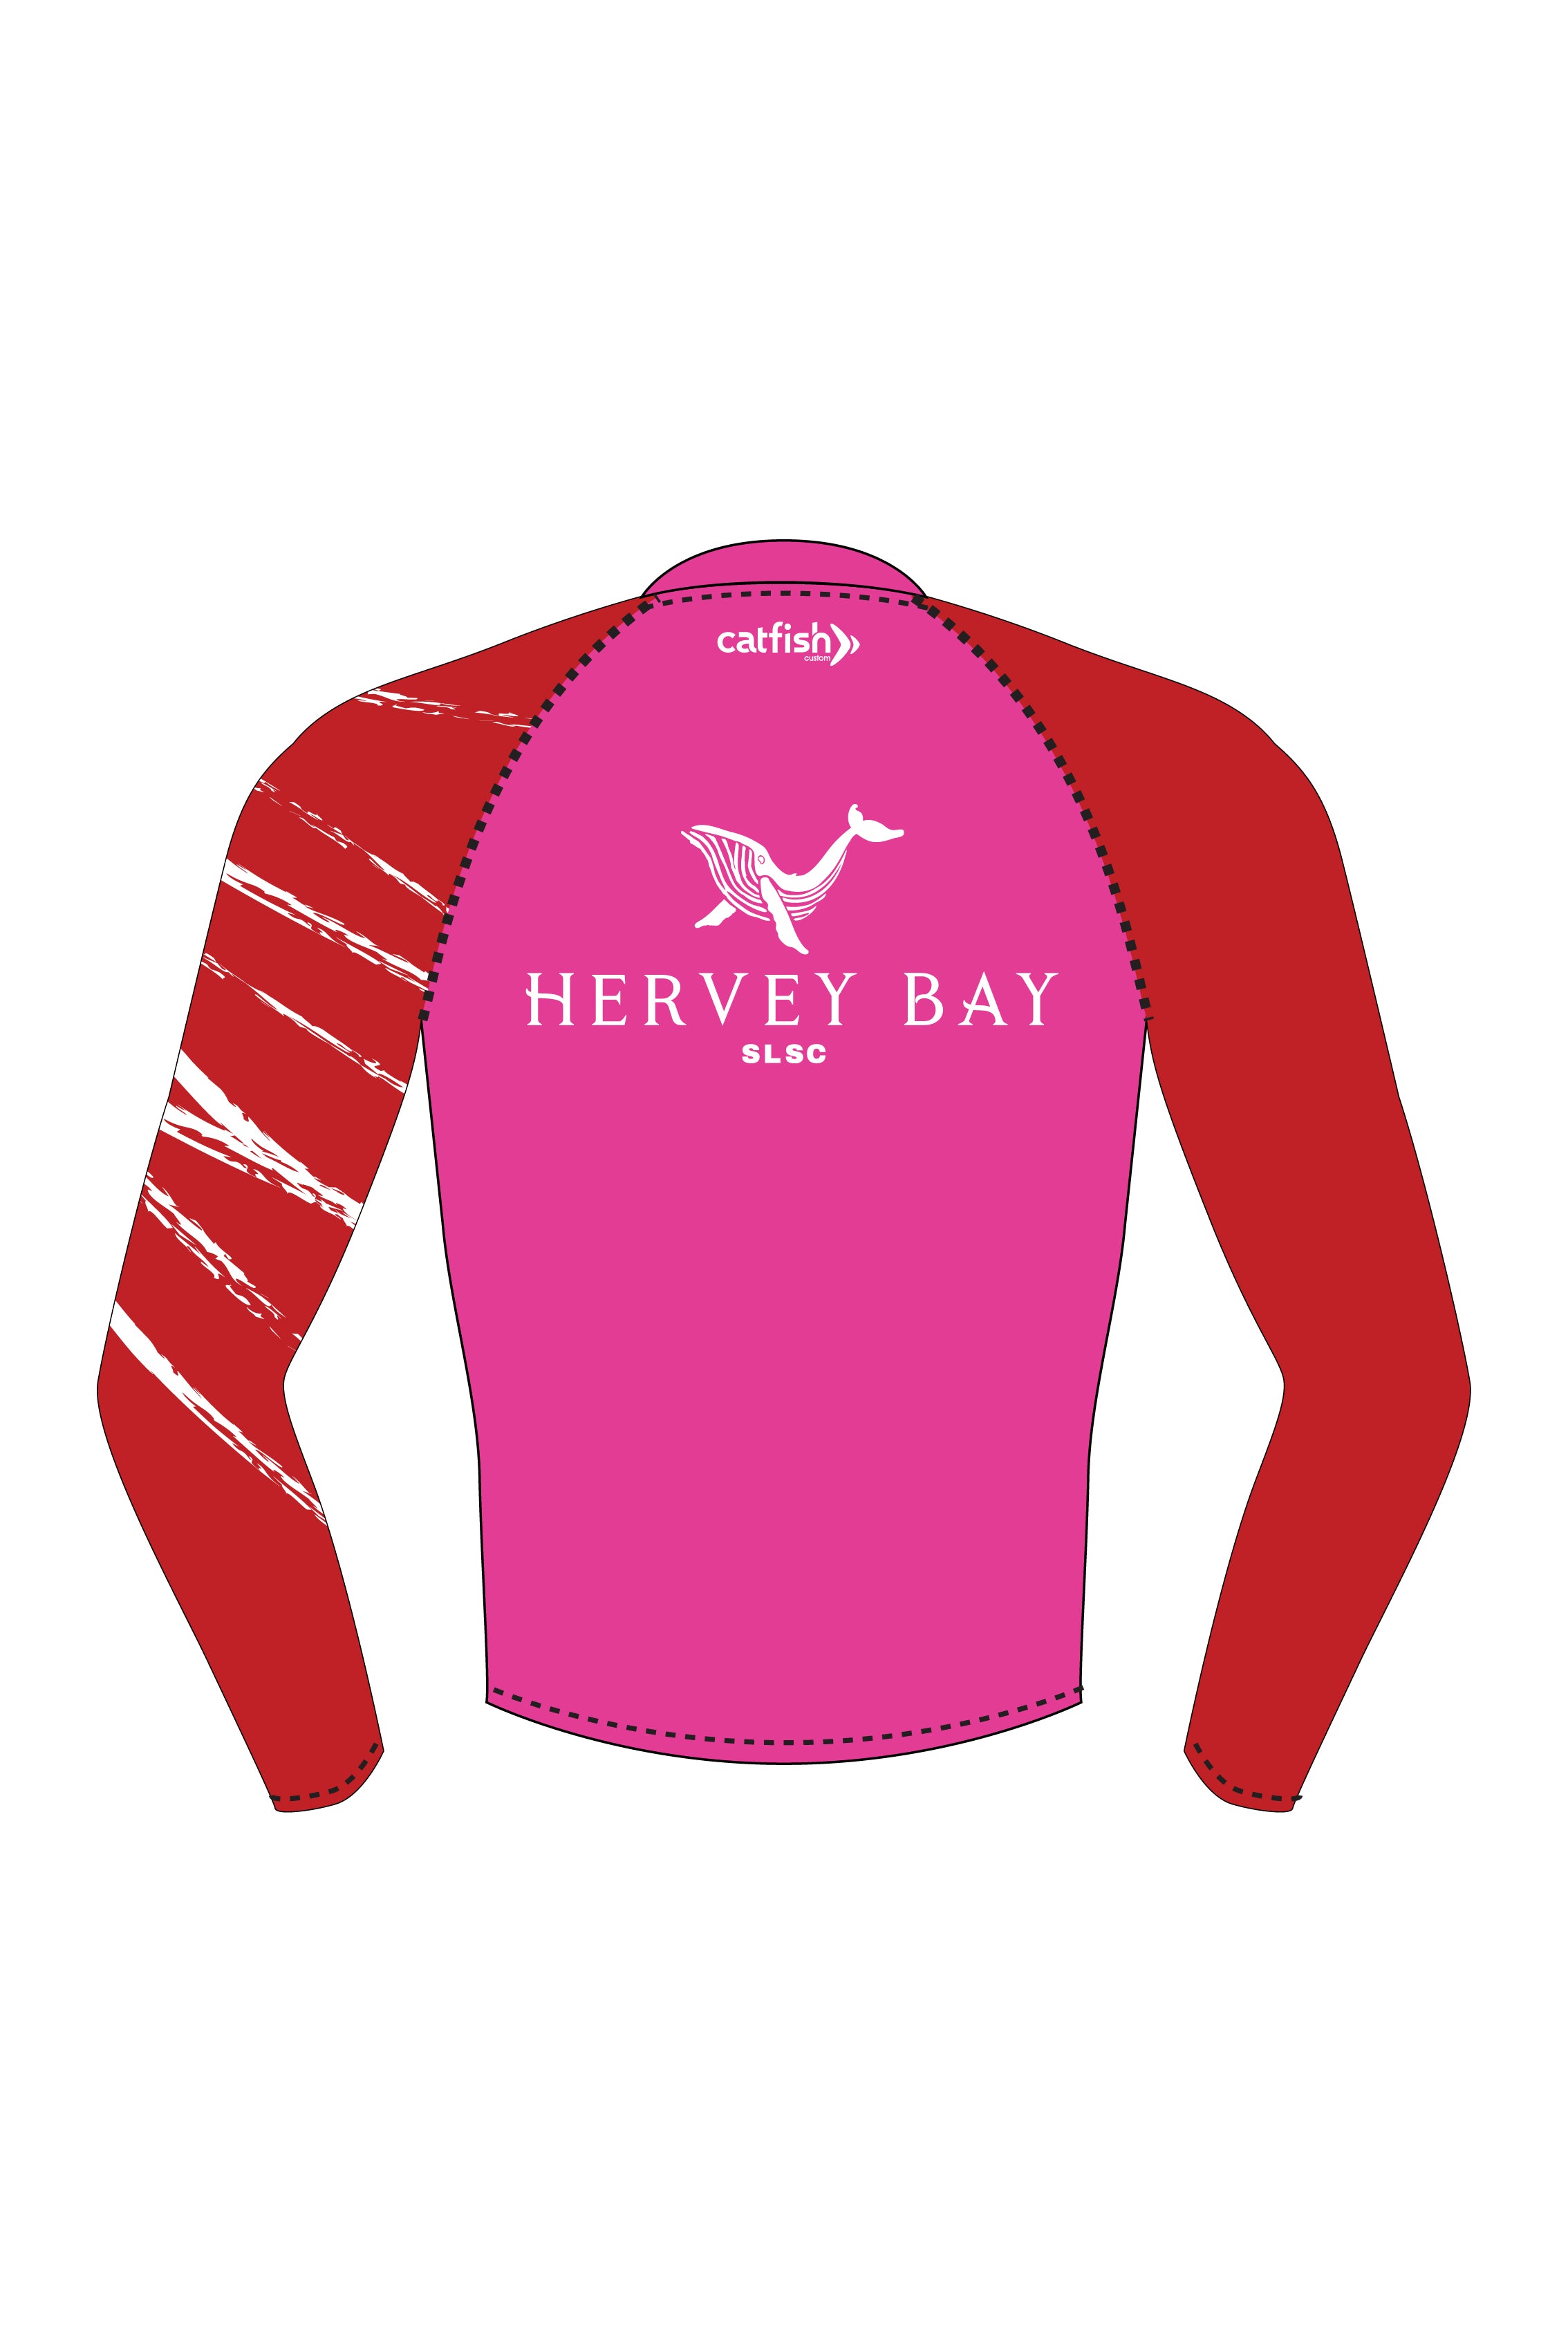 Hervey Bay LS Pink Hi-Vis - Adults